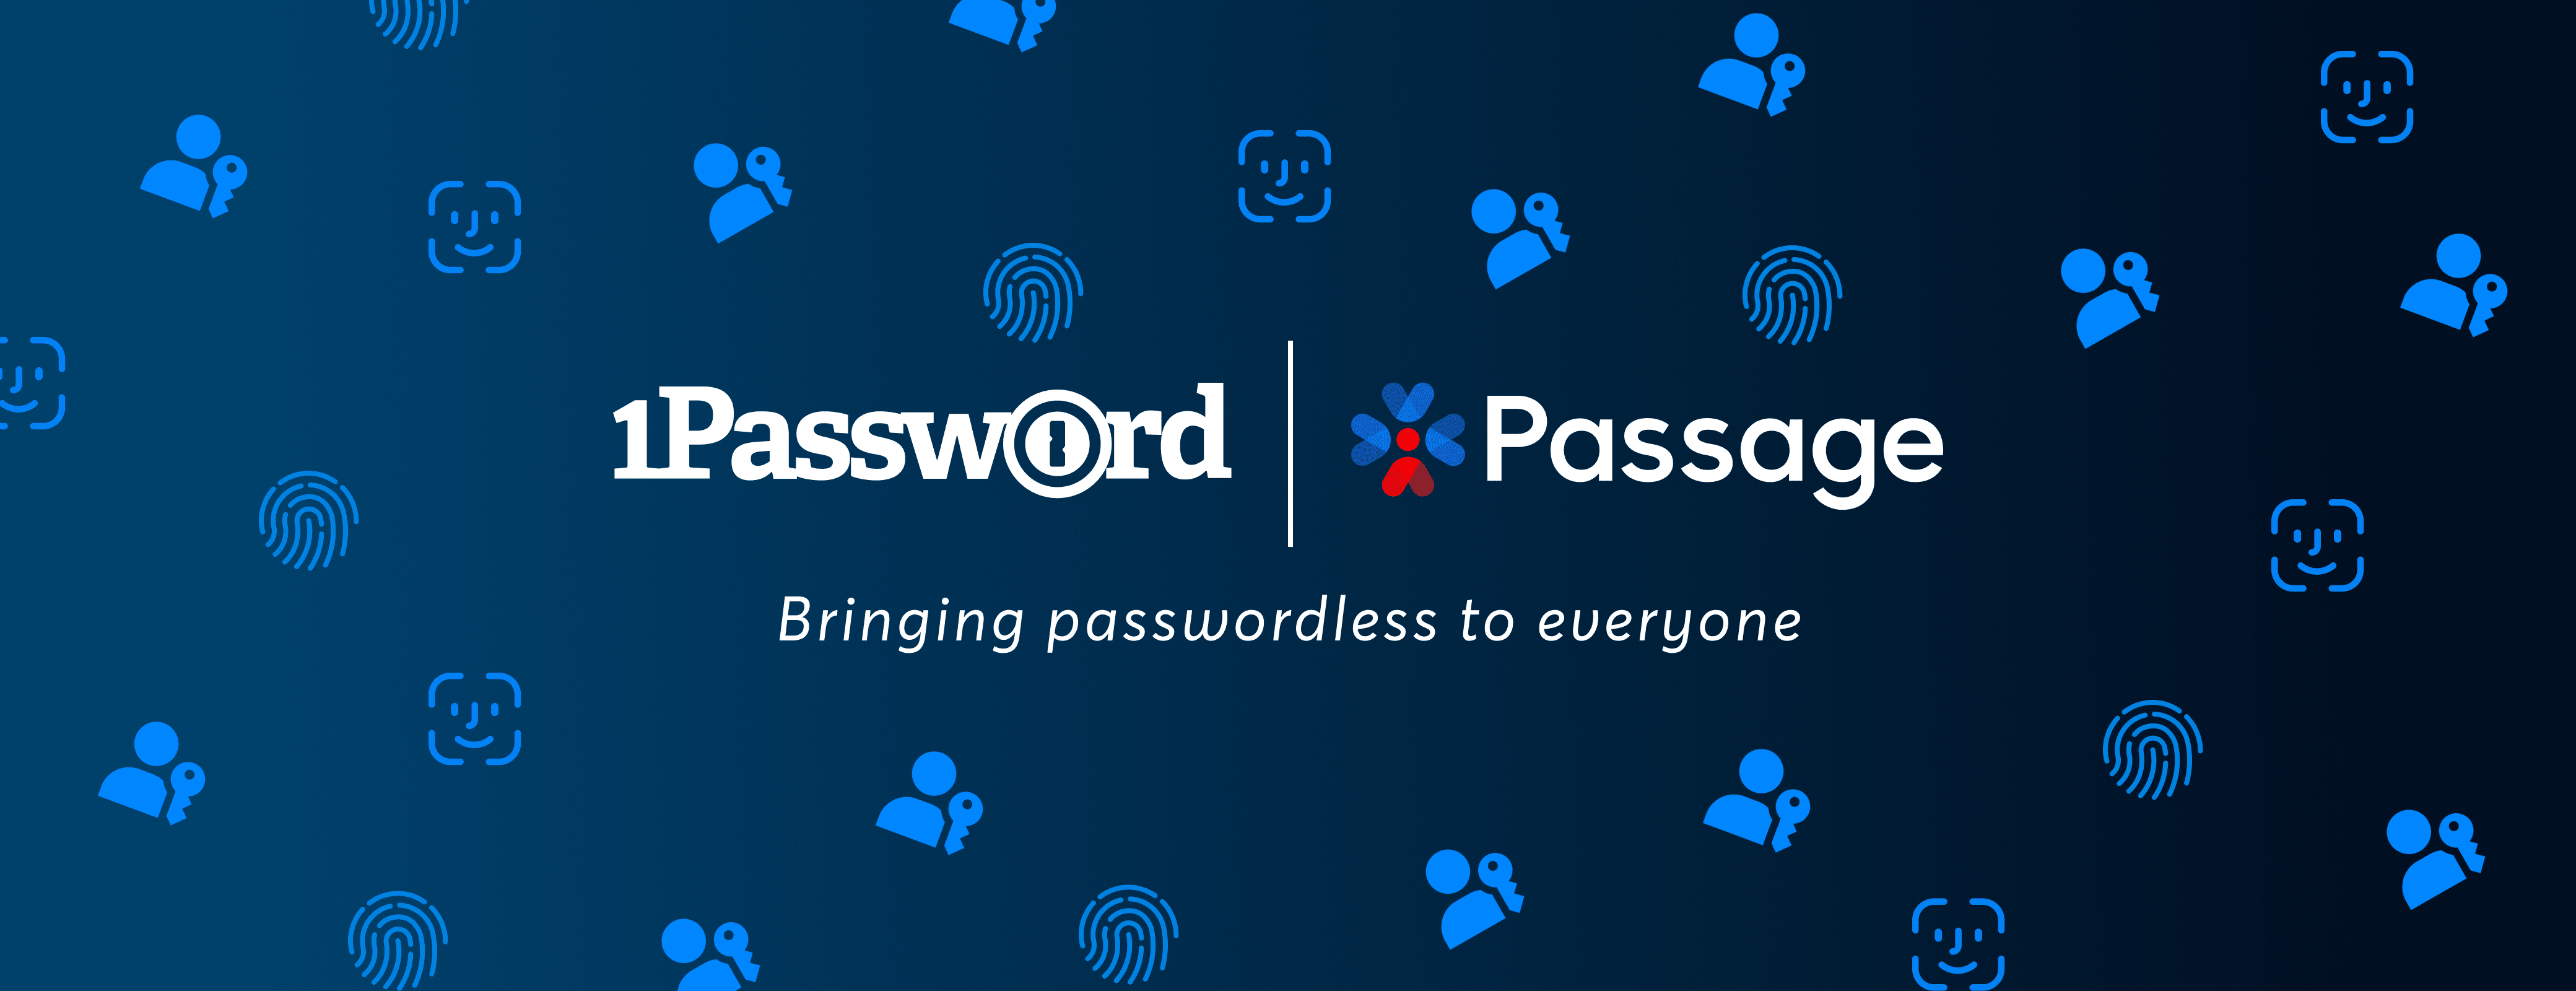 1Password Announces its Acquisition of  Passage